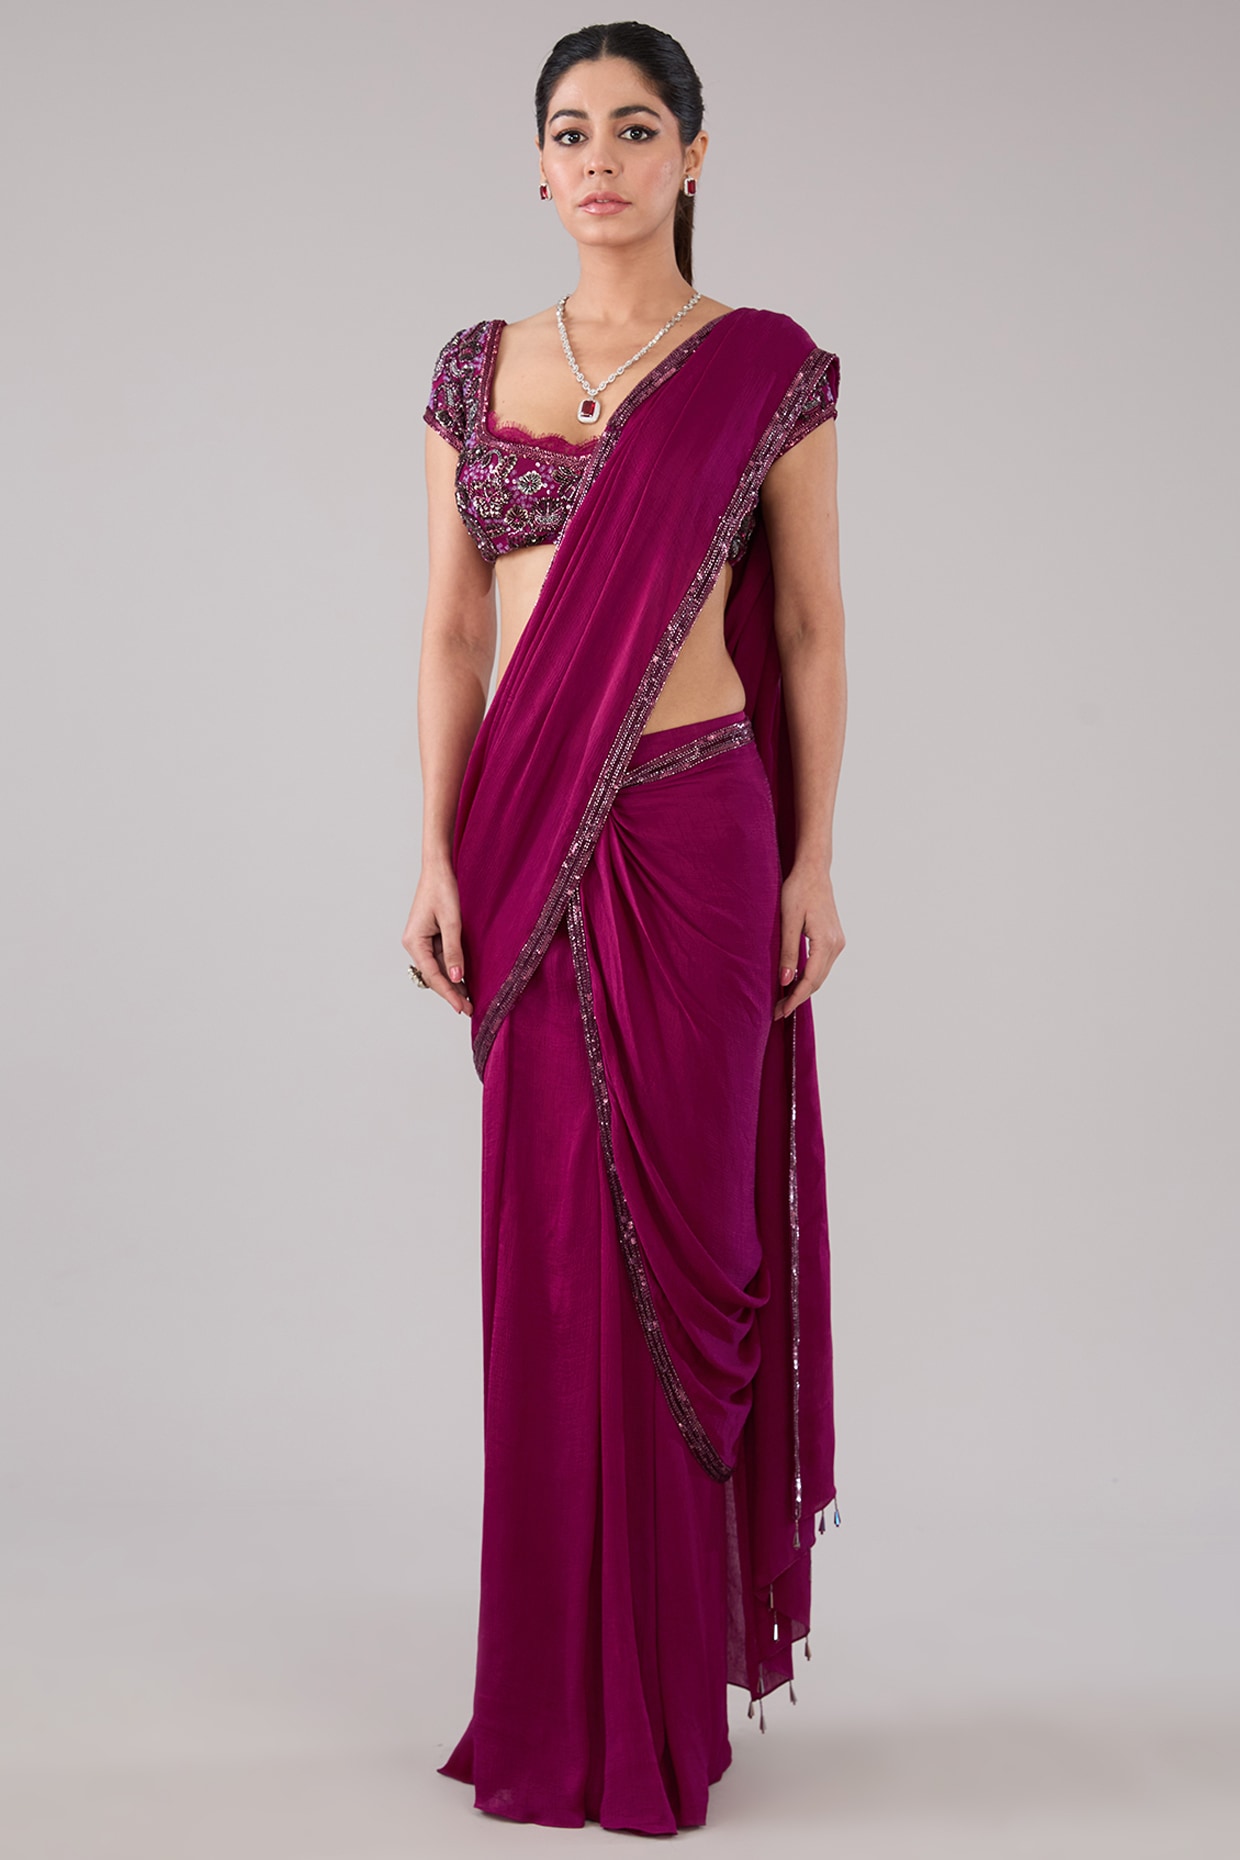 Presenting beautiful velvet saree